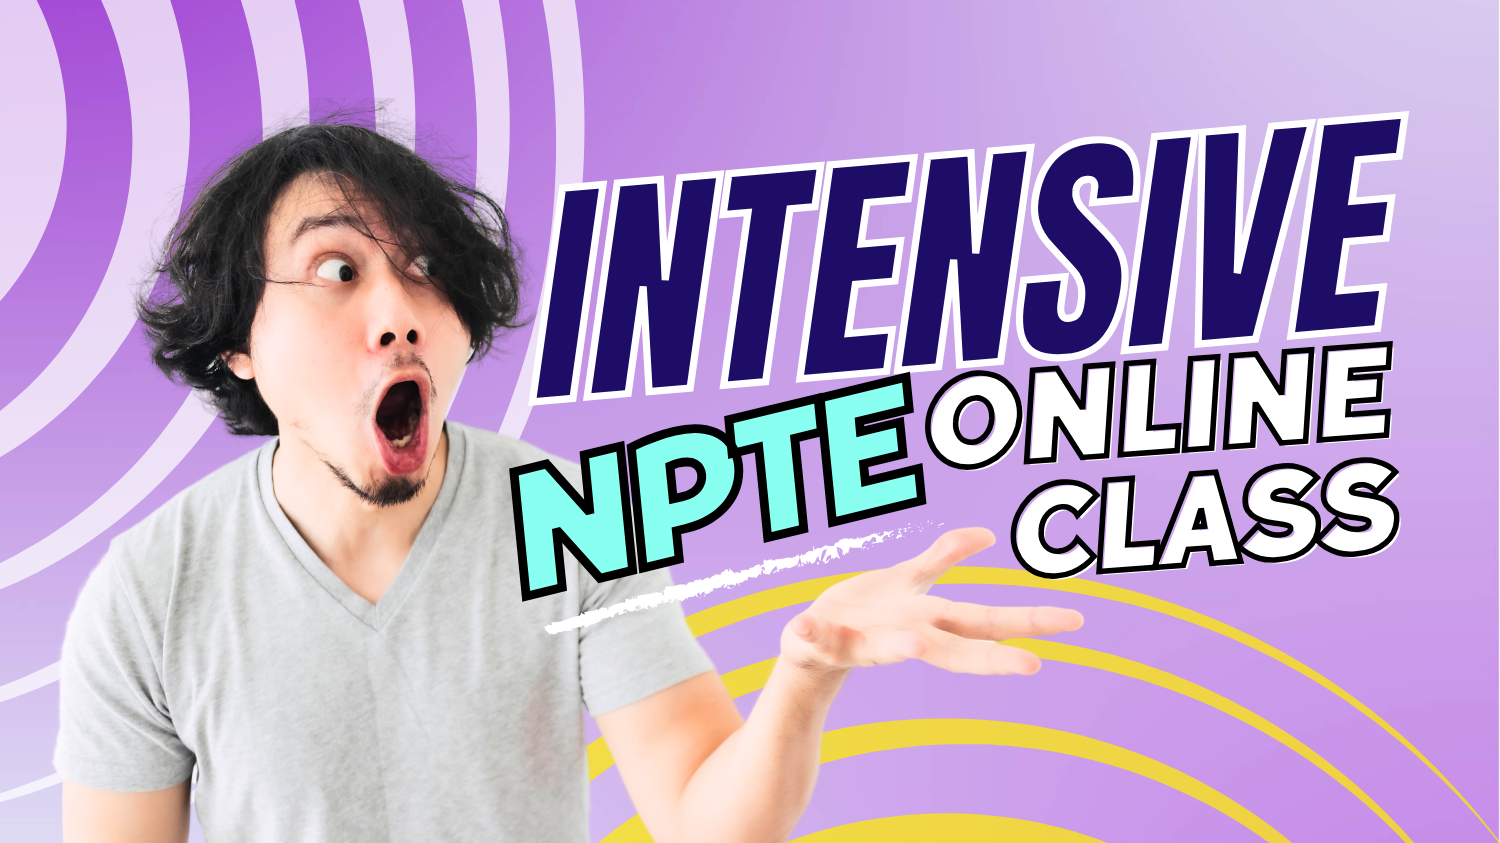 NPTE Intensive Class